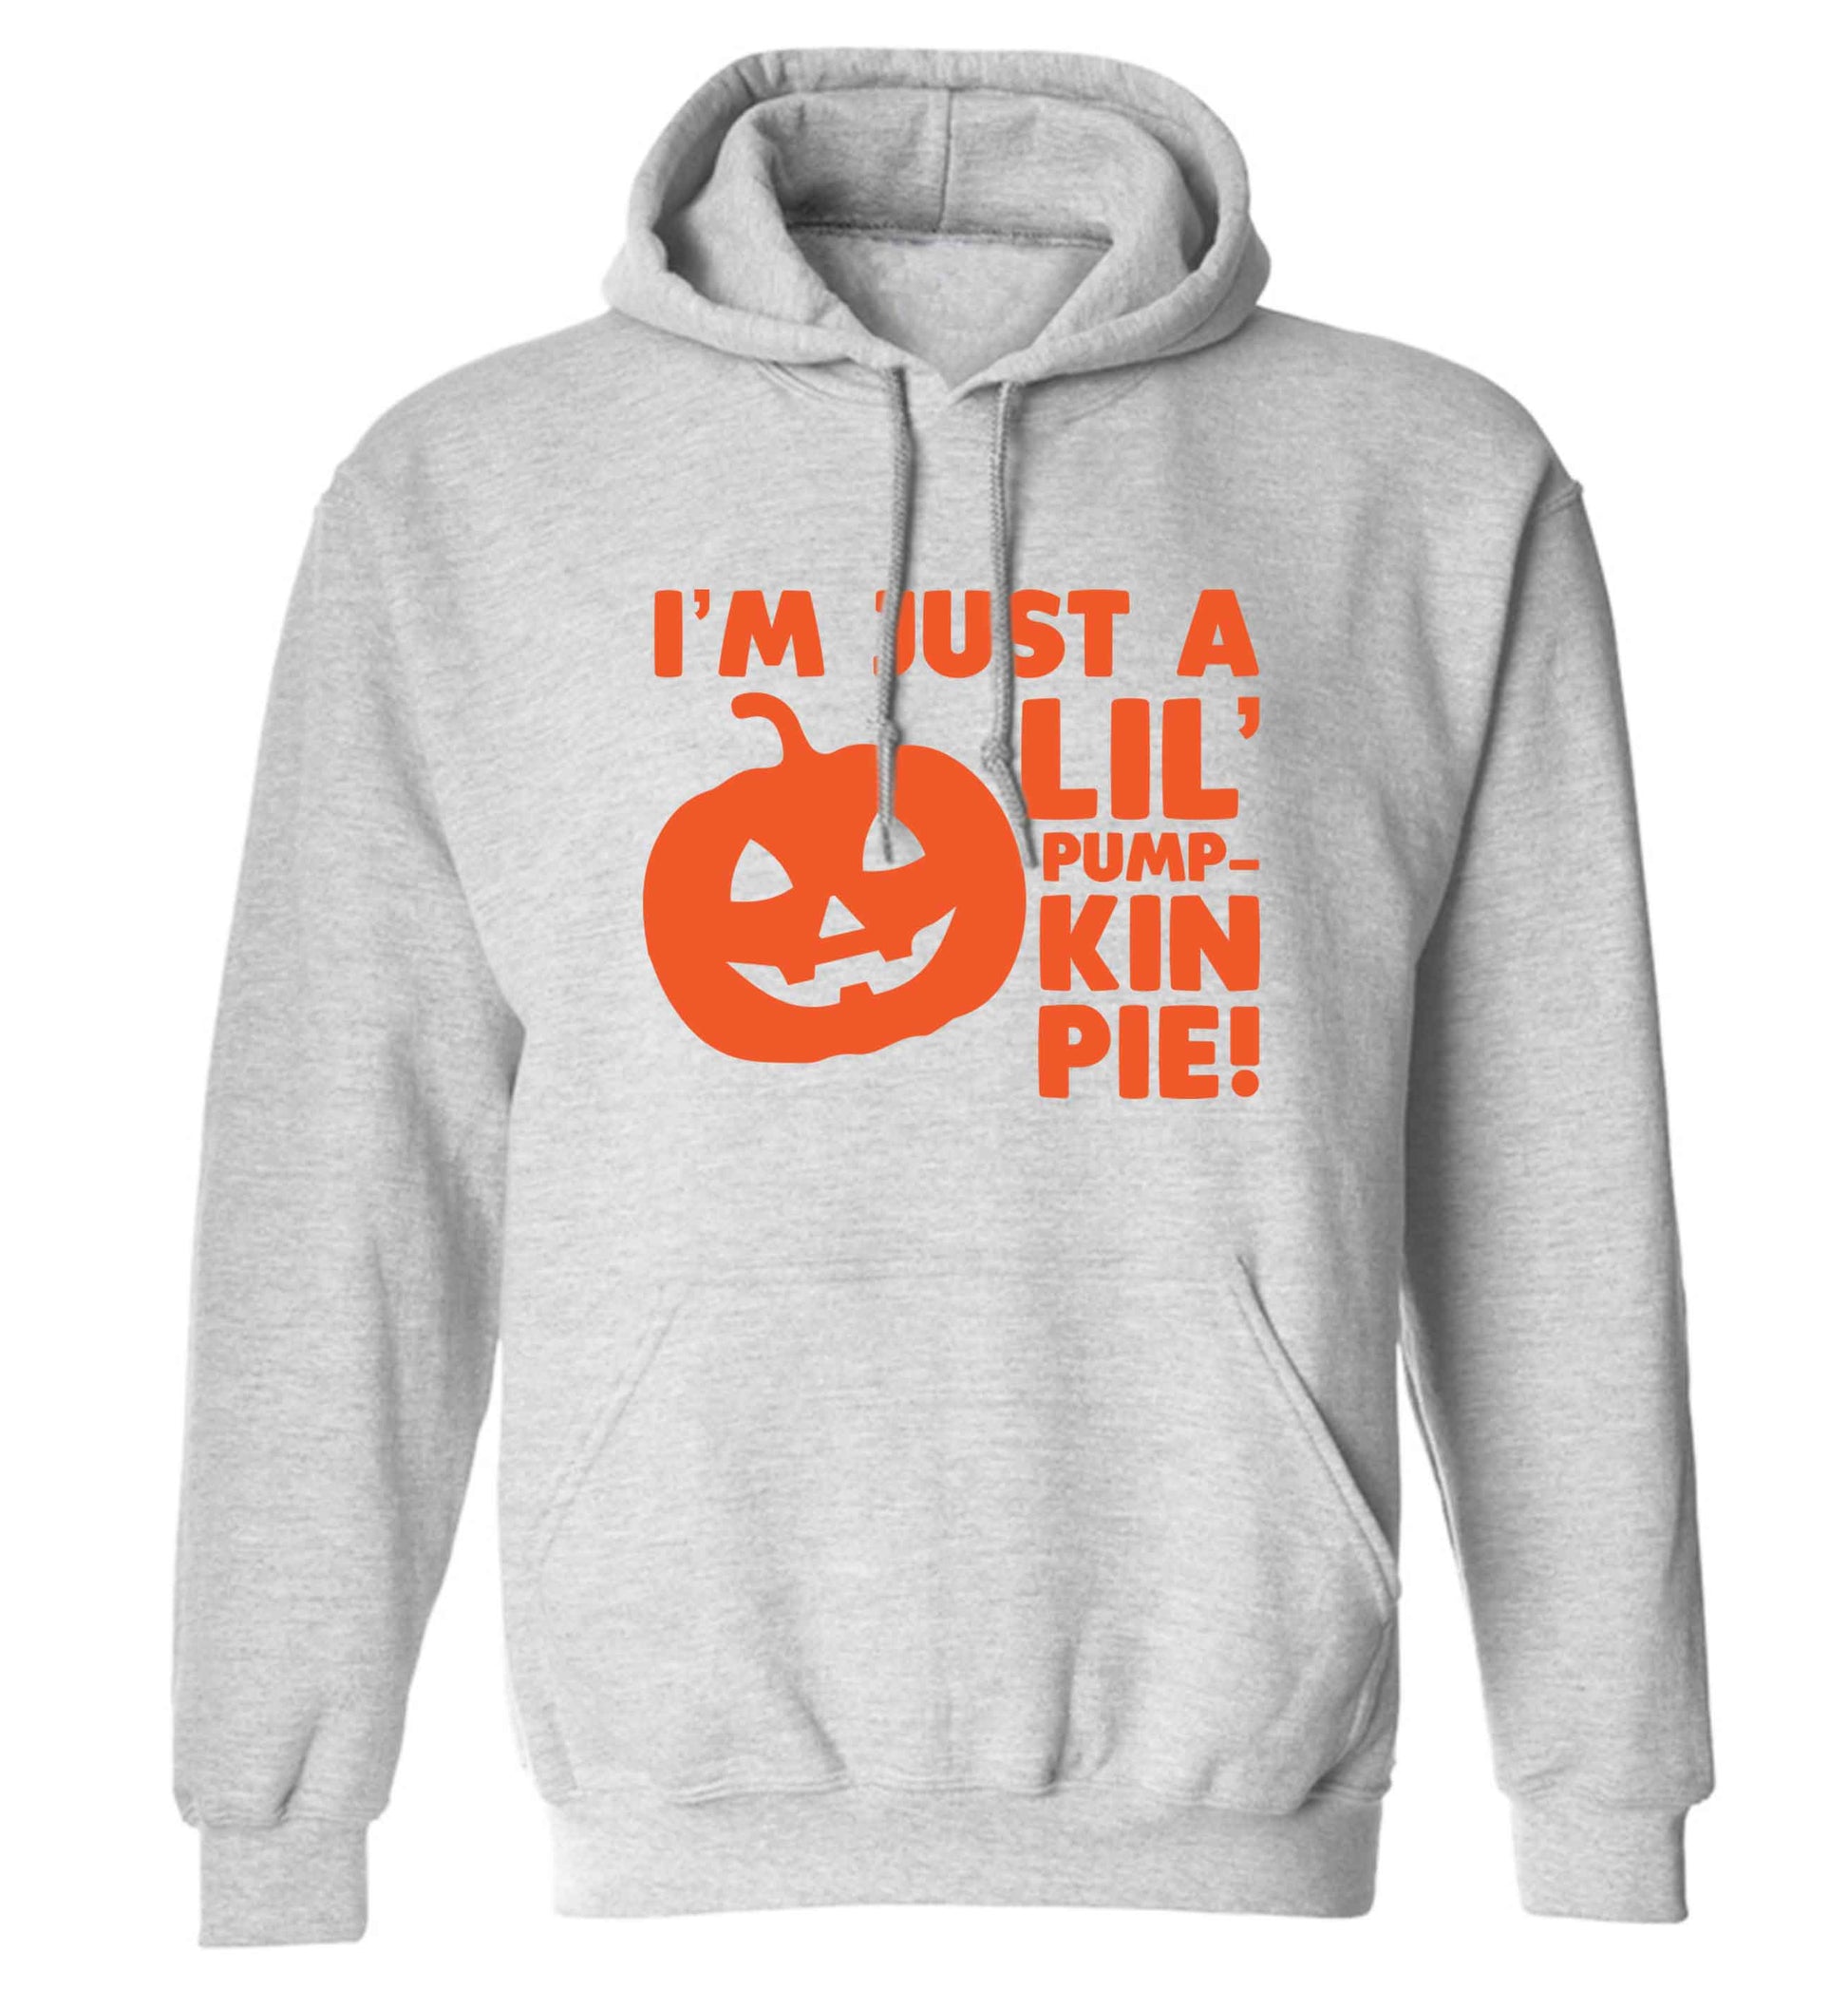 I'm just a lil' pumpkin pie adults unisex grey hoodie 2XL